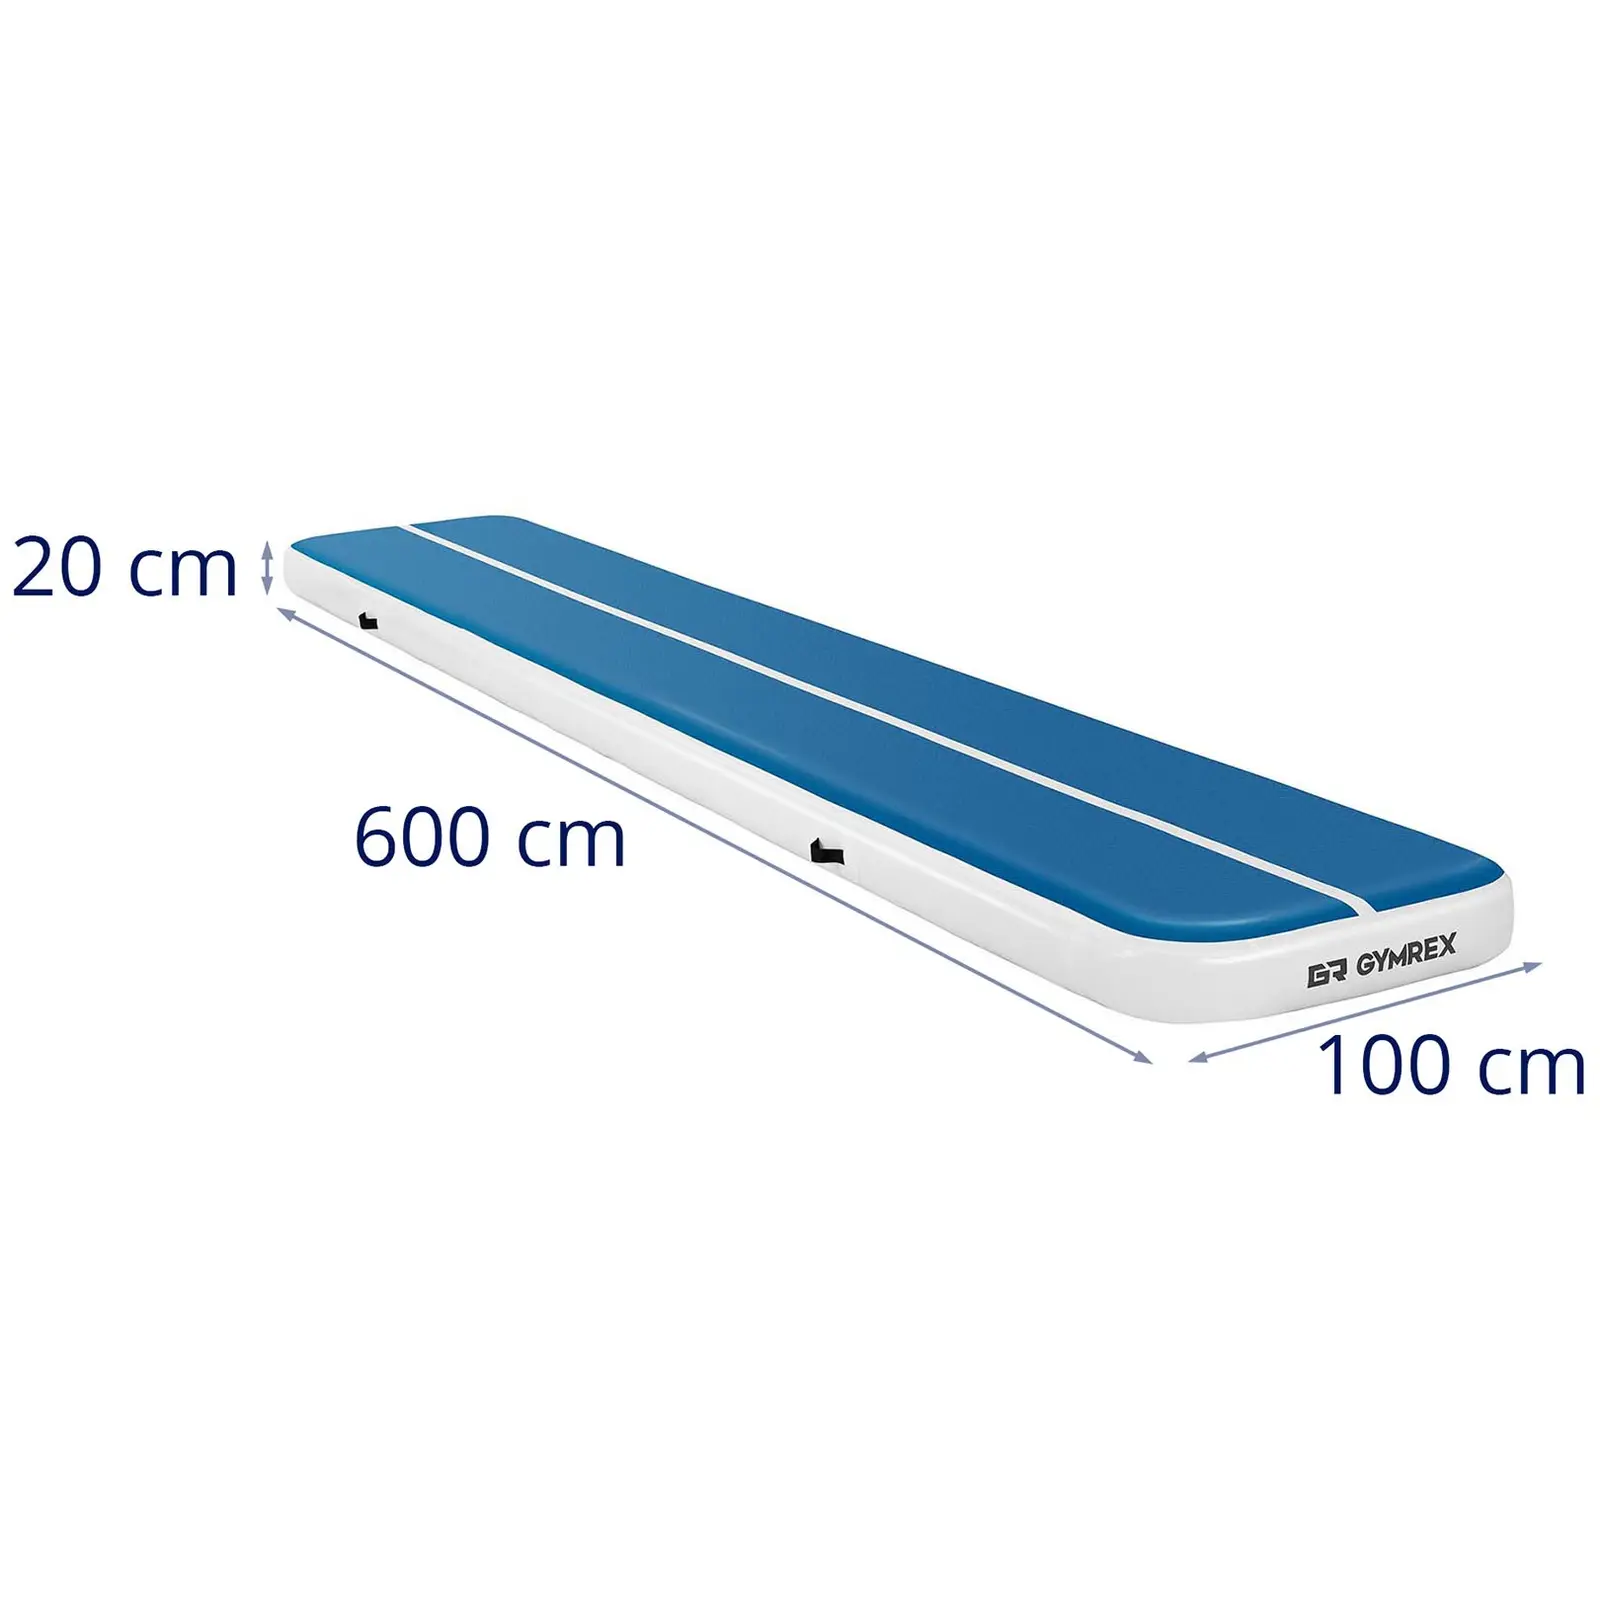 Oppblåsbar treningsmatte - 600 x 100 x 20 cm - 300 kg - blå/hvit